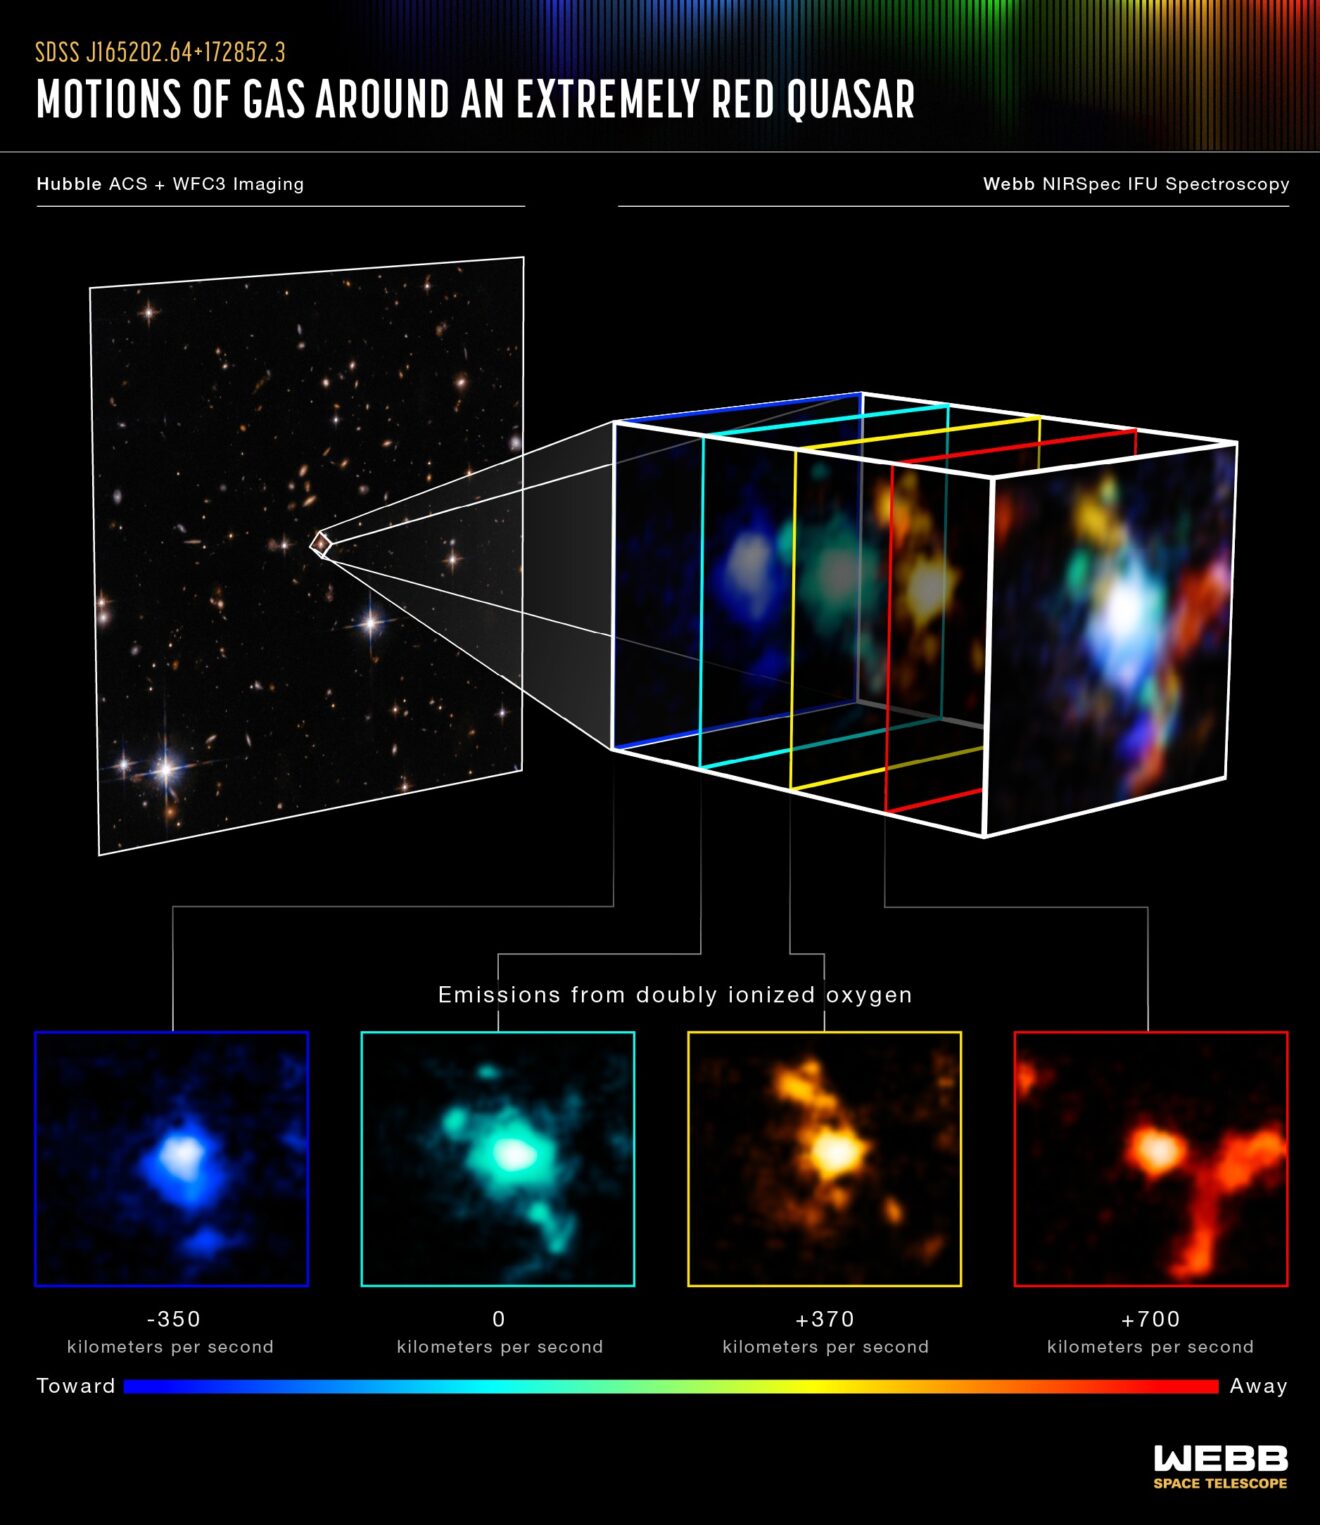 Webb ontdekt een zich vormende cluster van sterrenstelsels rond een rode quasar in het vroege heelal